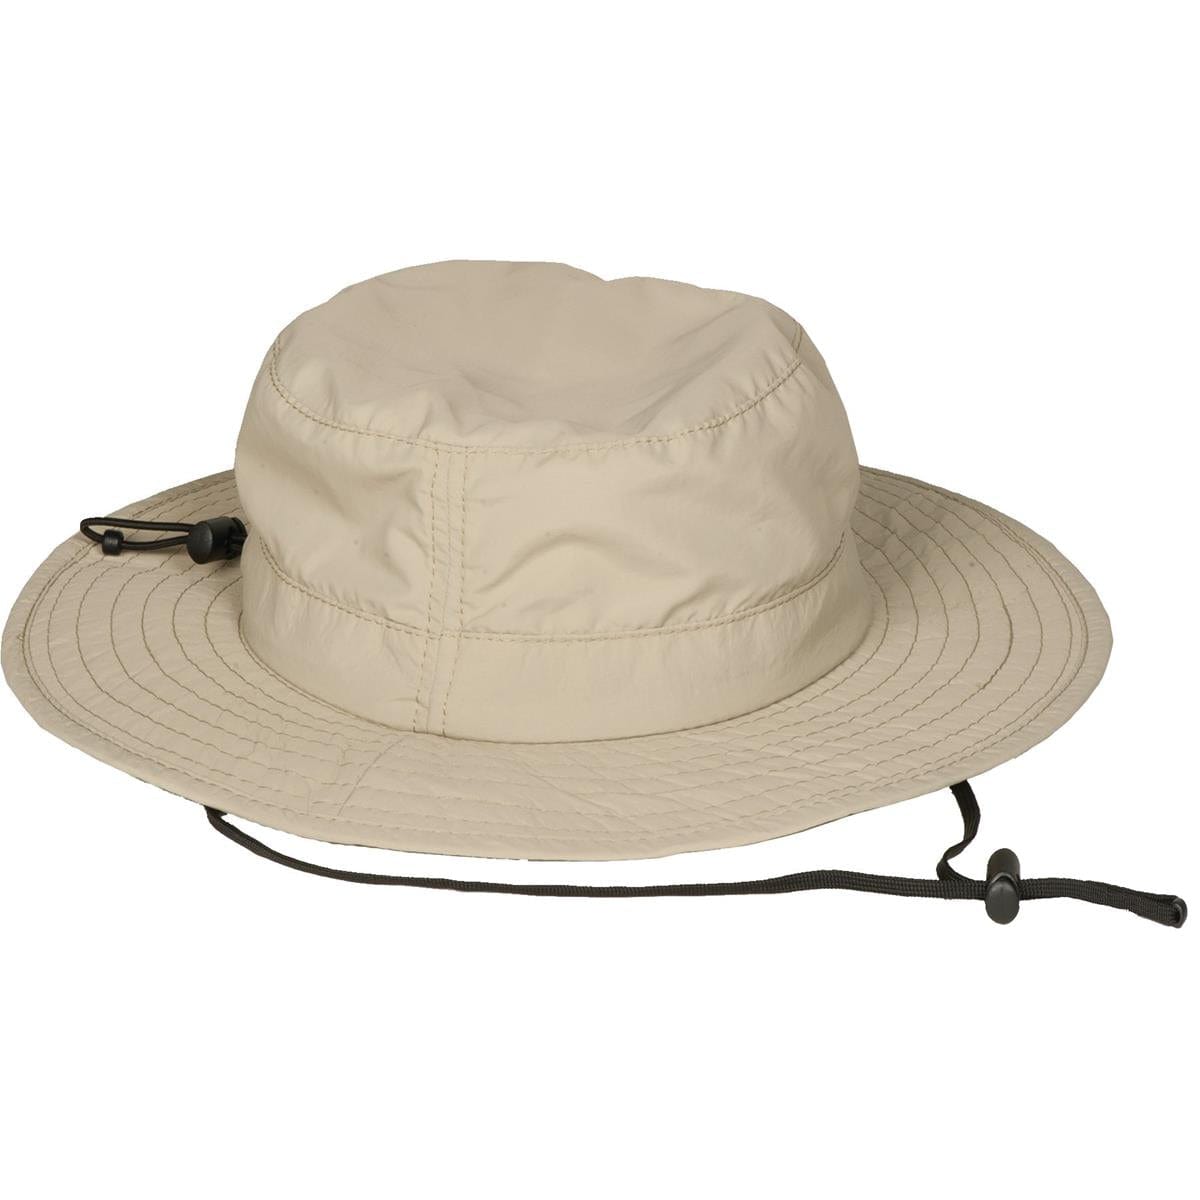 Supplex® Coolmax® Booney-Style Sun Hat